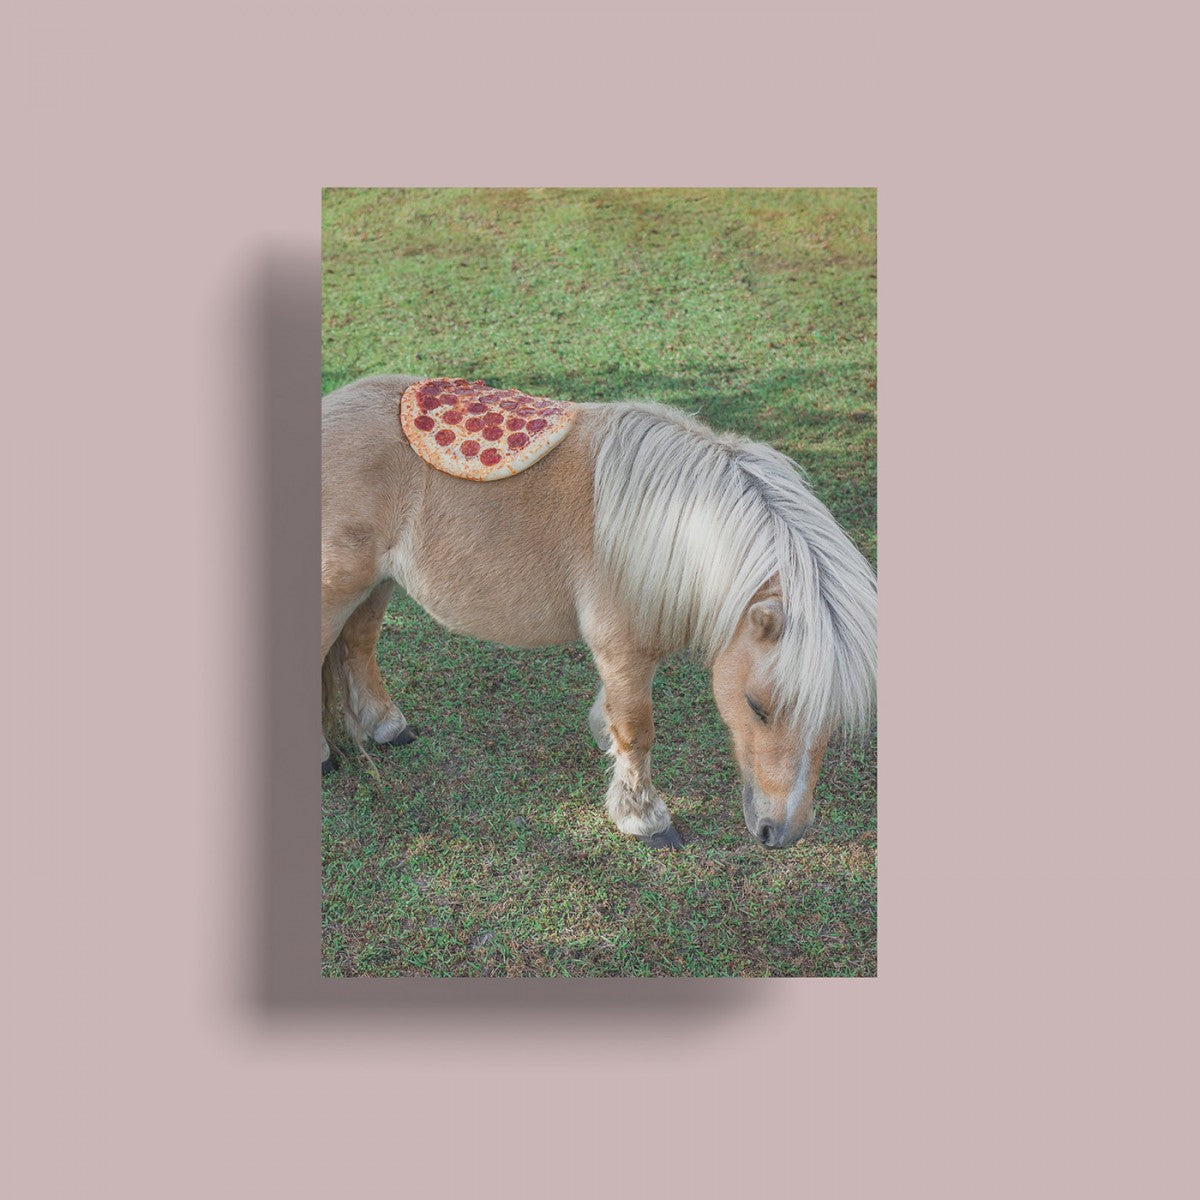 Selekkt Postkarte "Pizza In The Wild"